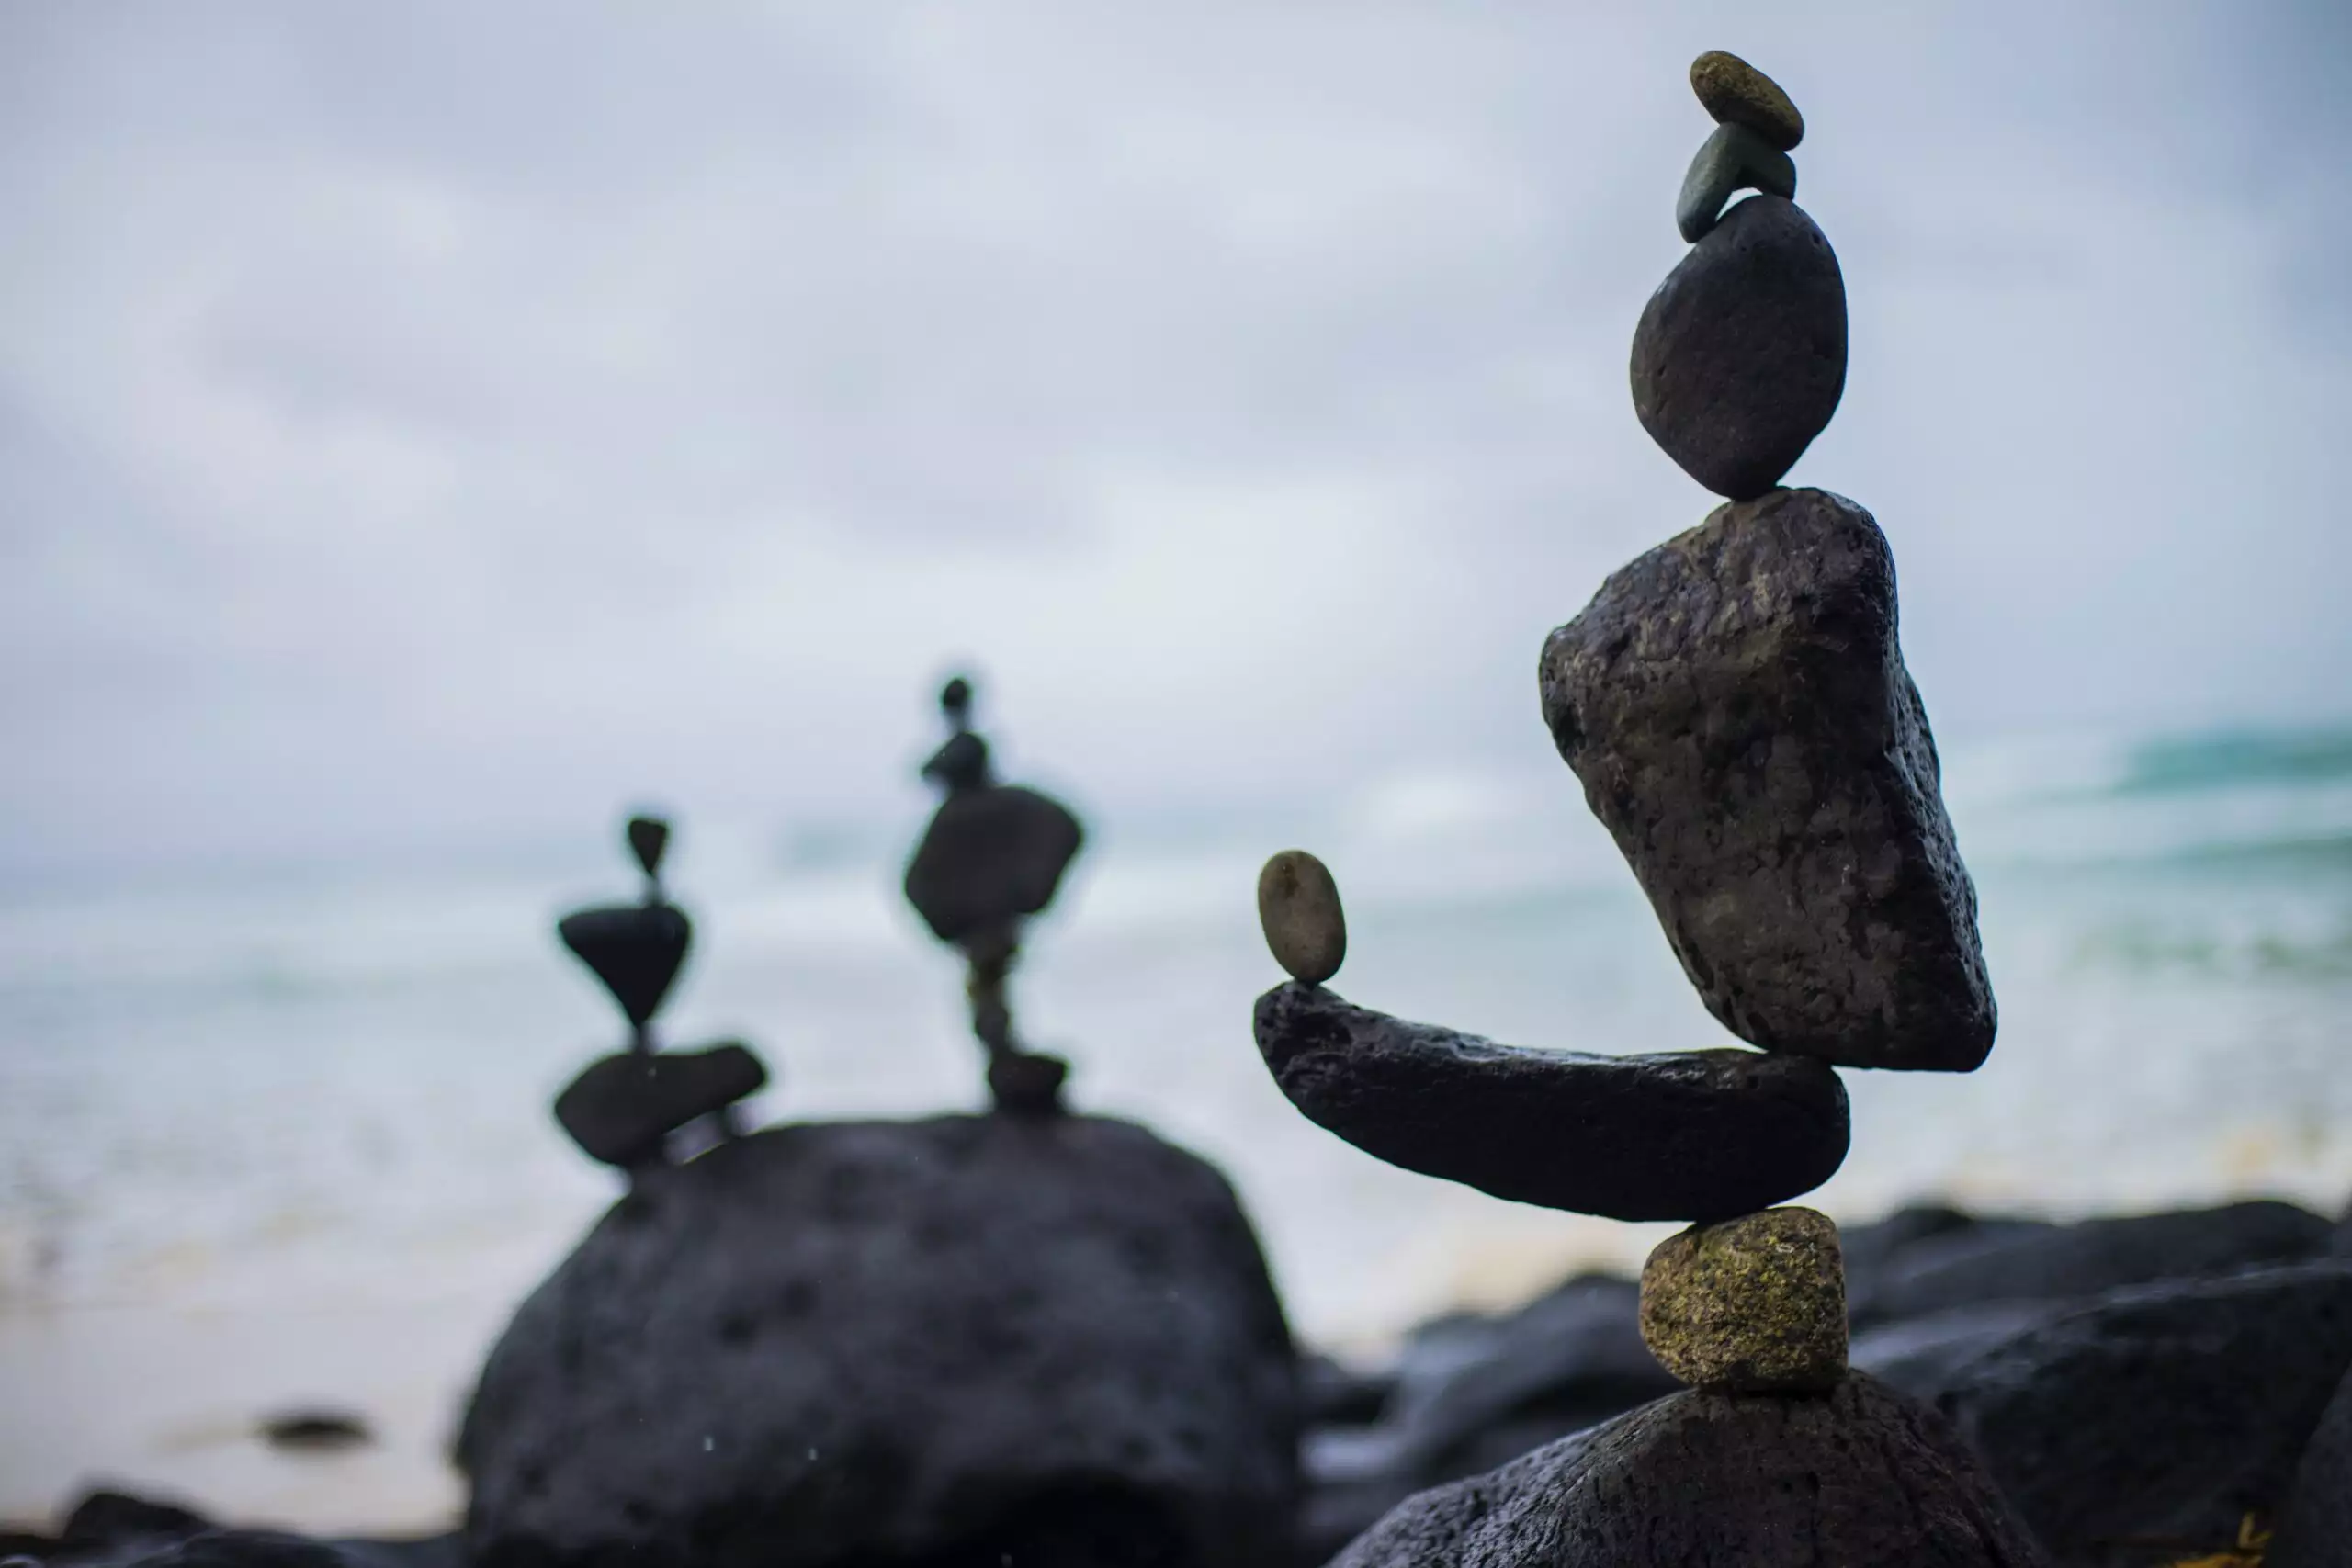 balancing rocks at the beach